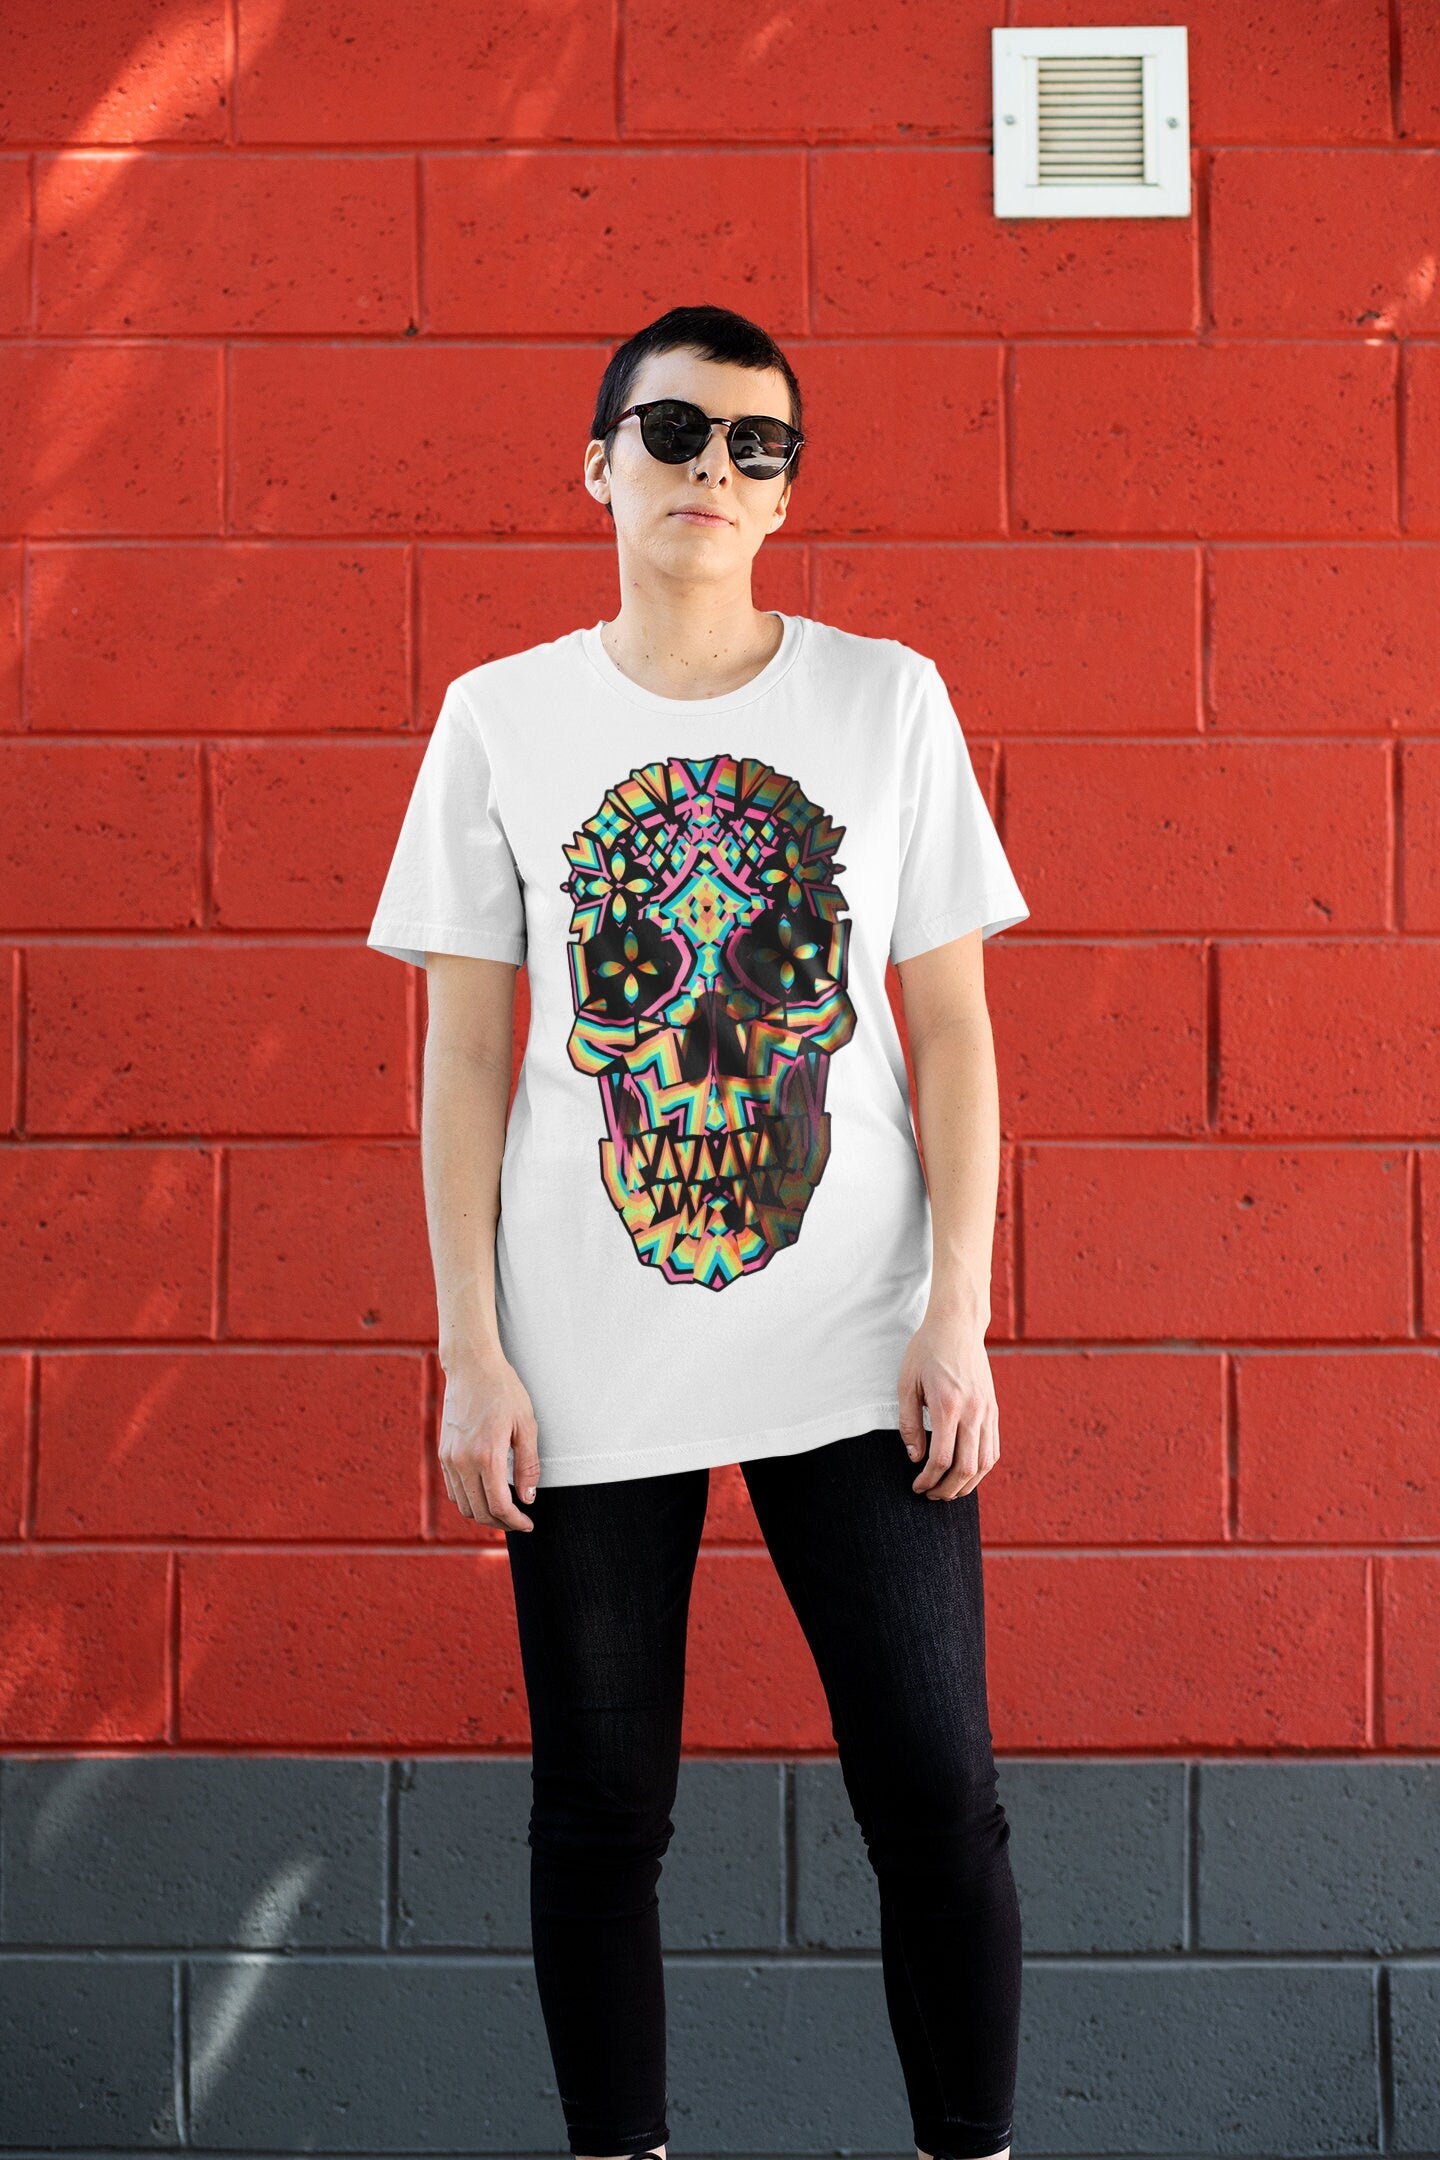 Abstract Skull Men's T-shirt, Printed Skull Art Tshirt, Original Sugar Skull Mens Shirt, Mens Graphic Tee, Bella Canvas Cool Skull Art Print